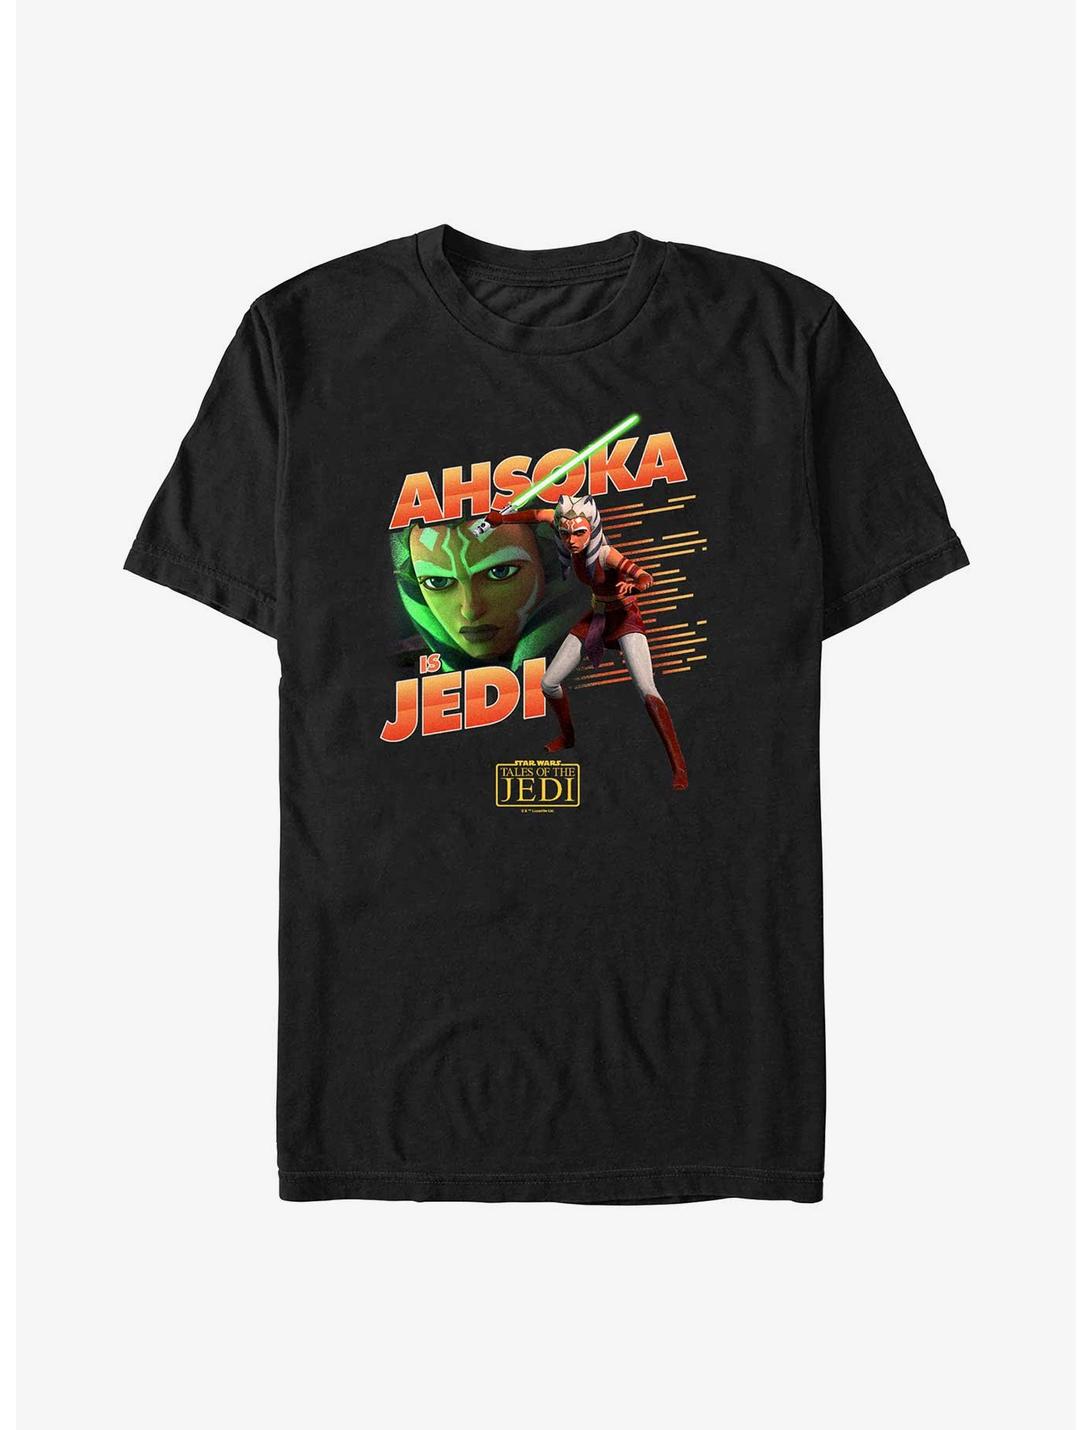 Star Wars: Tales of the Jedi Ahsoka Is Jedi T-Shirt, BLACK, hi-res